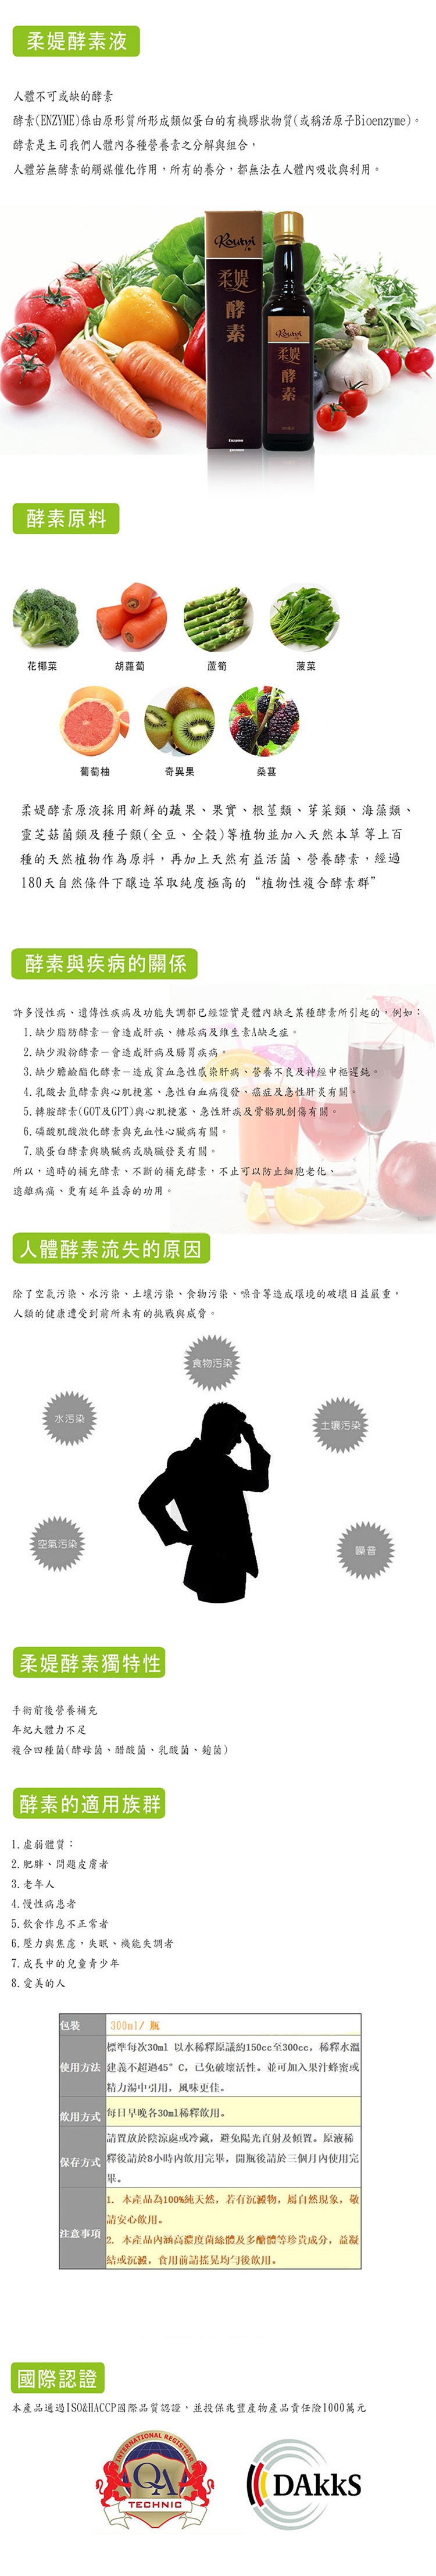 [台灣製造進口] 柔媞_混合發酵果蔬濃縮飲料-300ml/瓶 買一送一